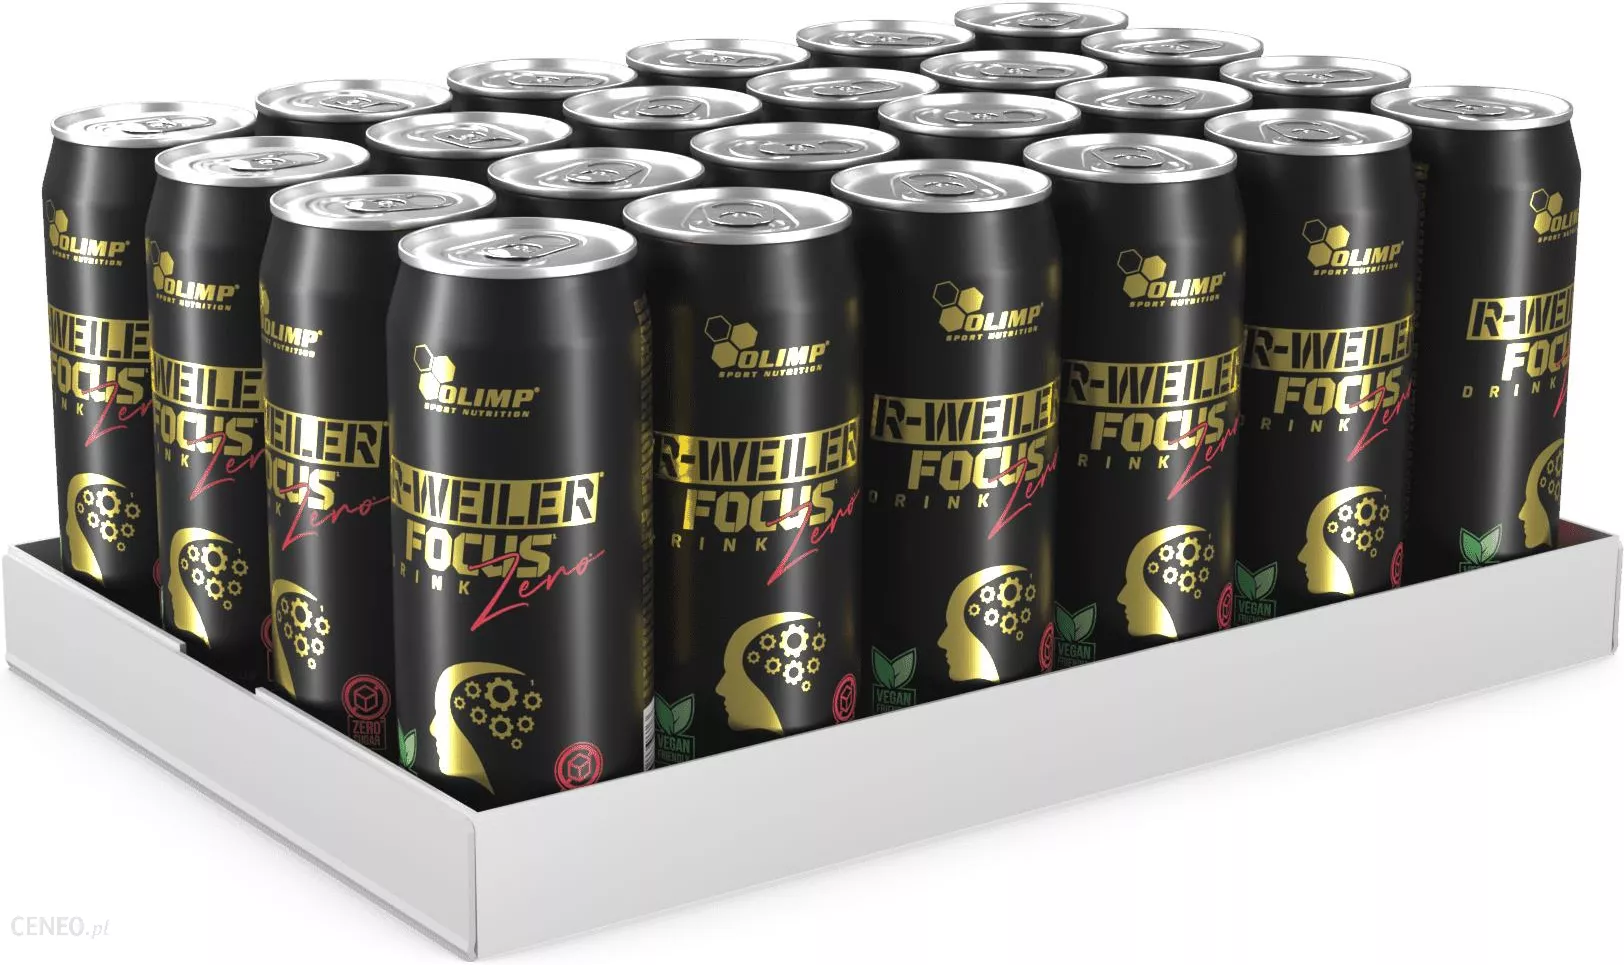 R-WEILER FOCUS DRINK ZERO - 24 x 330ml